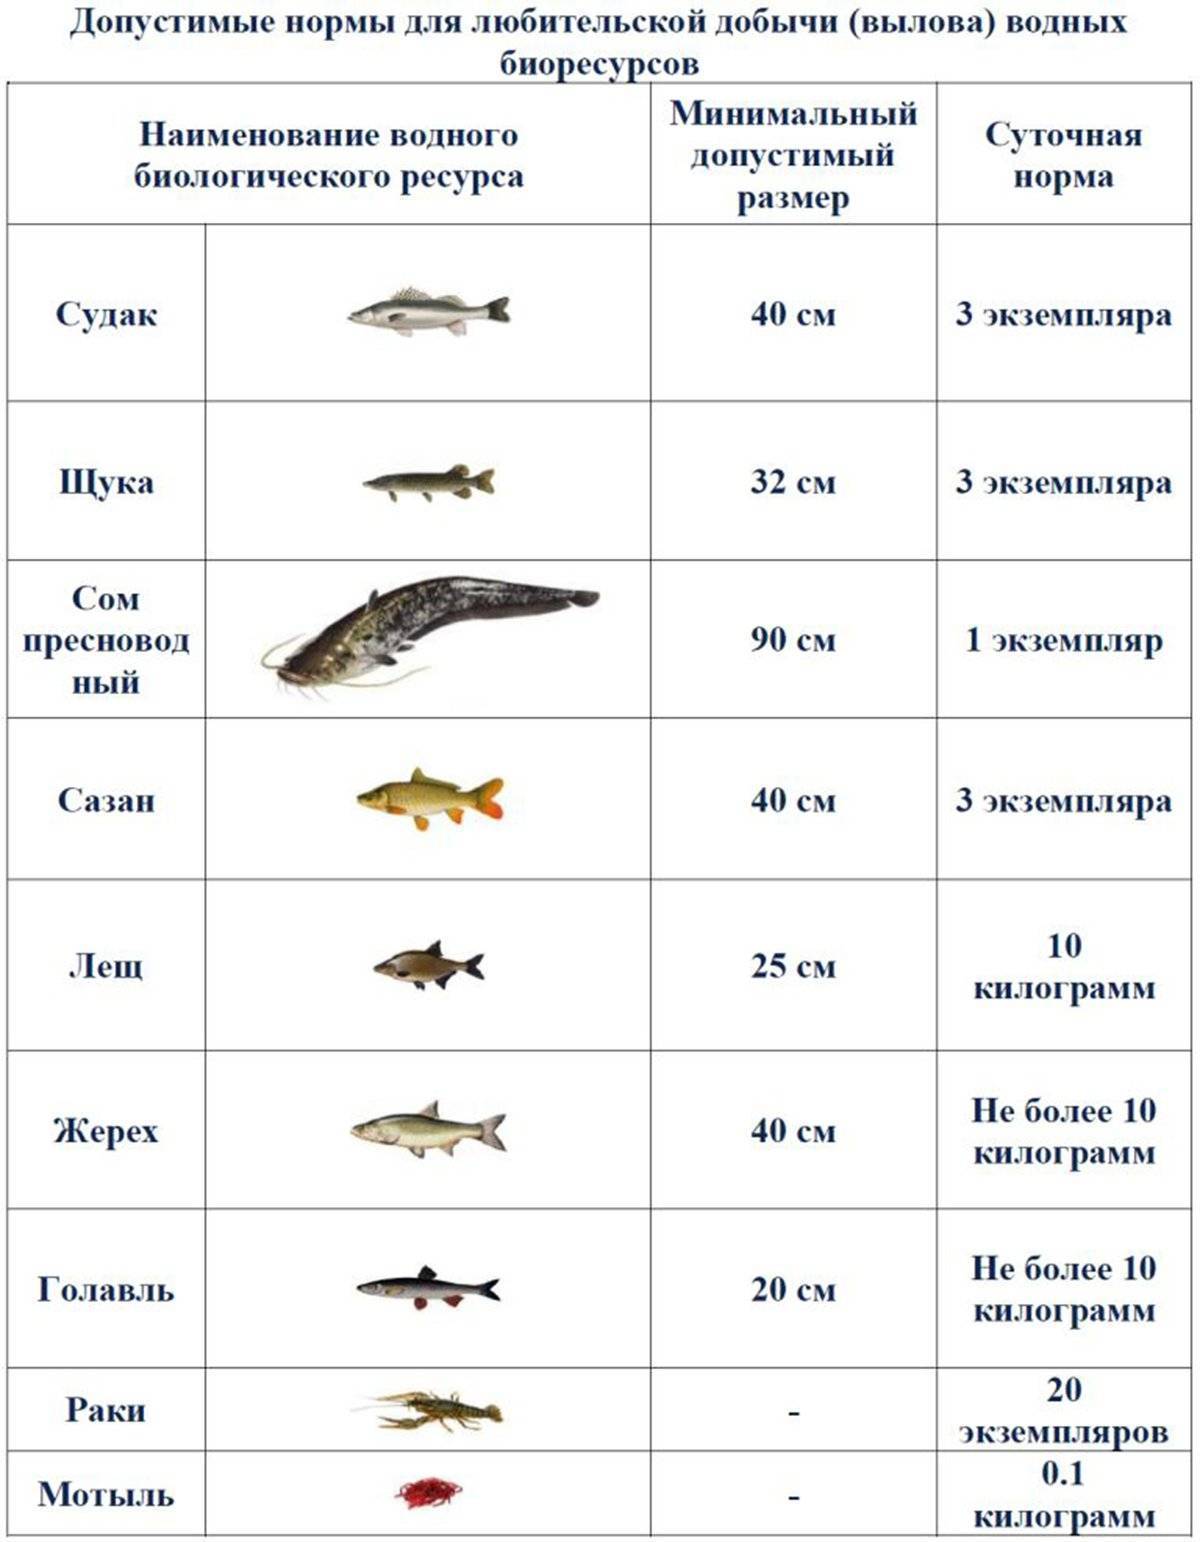 Правила рыболовства в московской области 2019 с изменениями